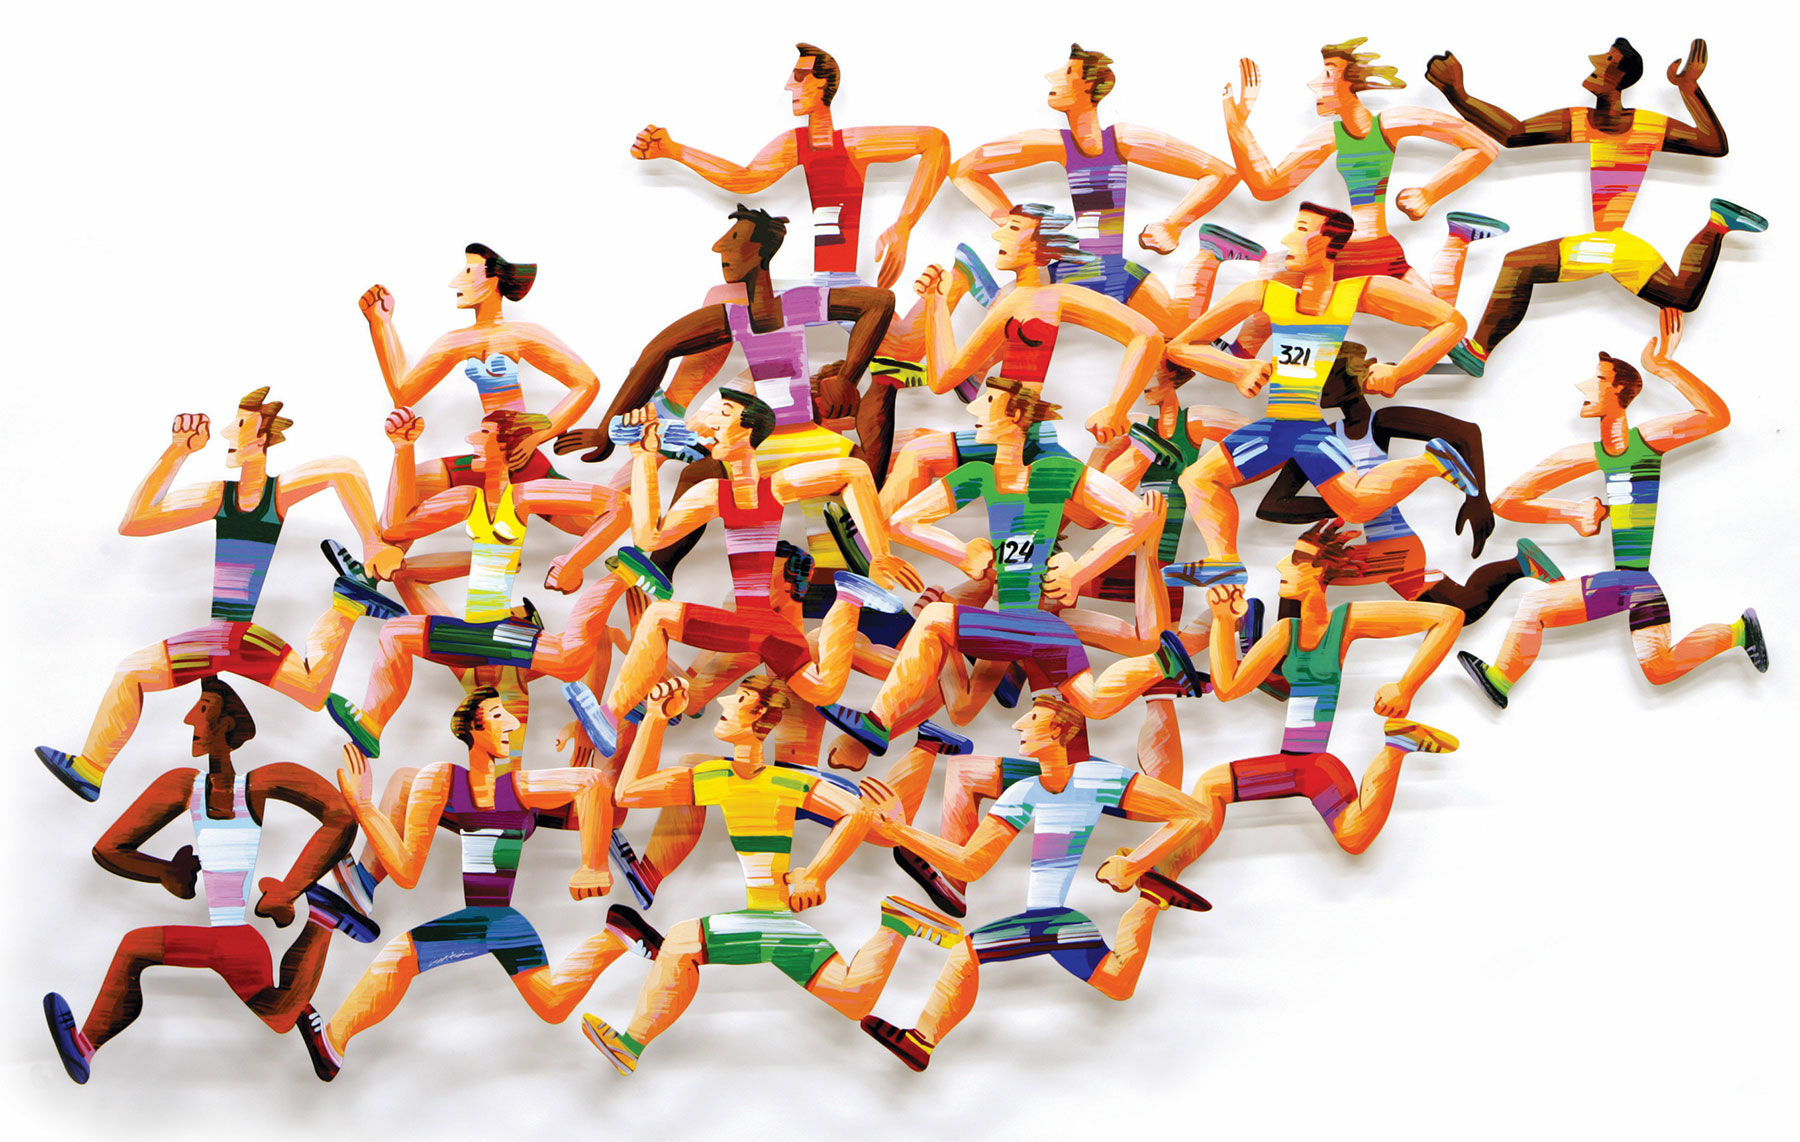 3D wall sculpture "Long Distance Runners" (2004), aluminium by David Gerstein